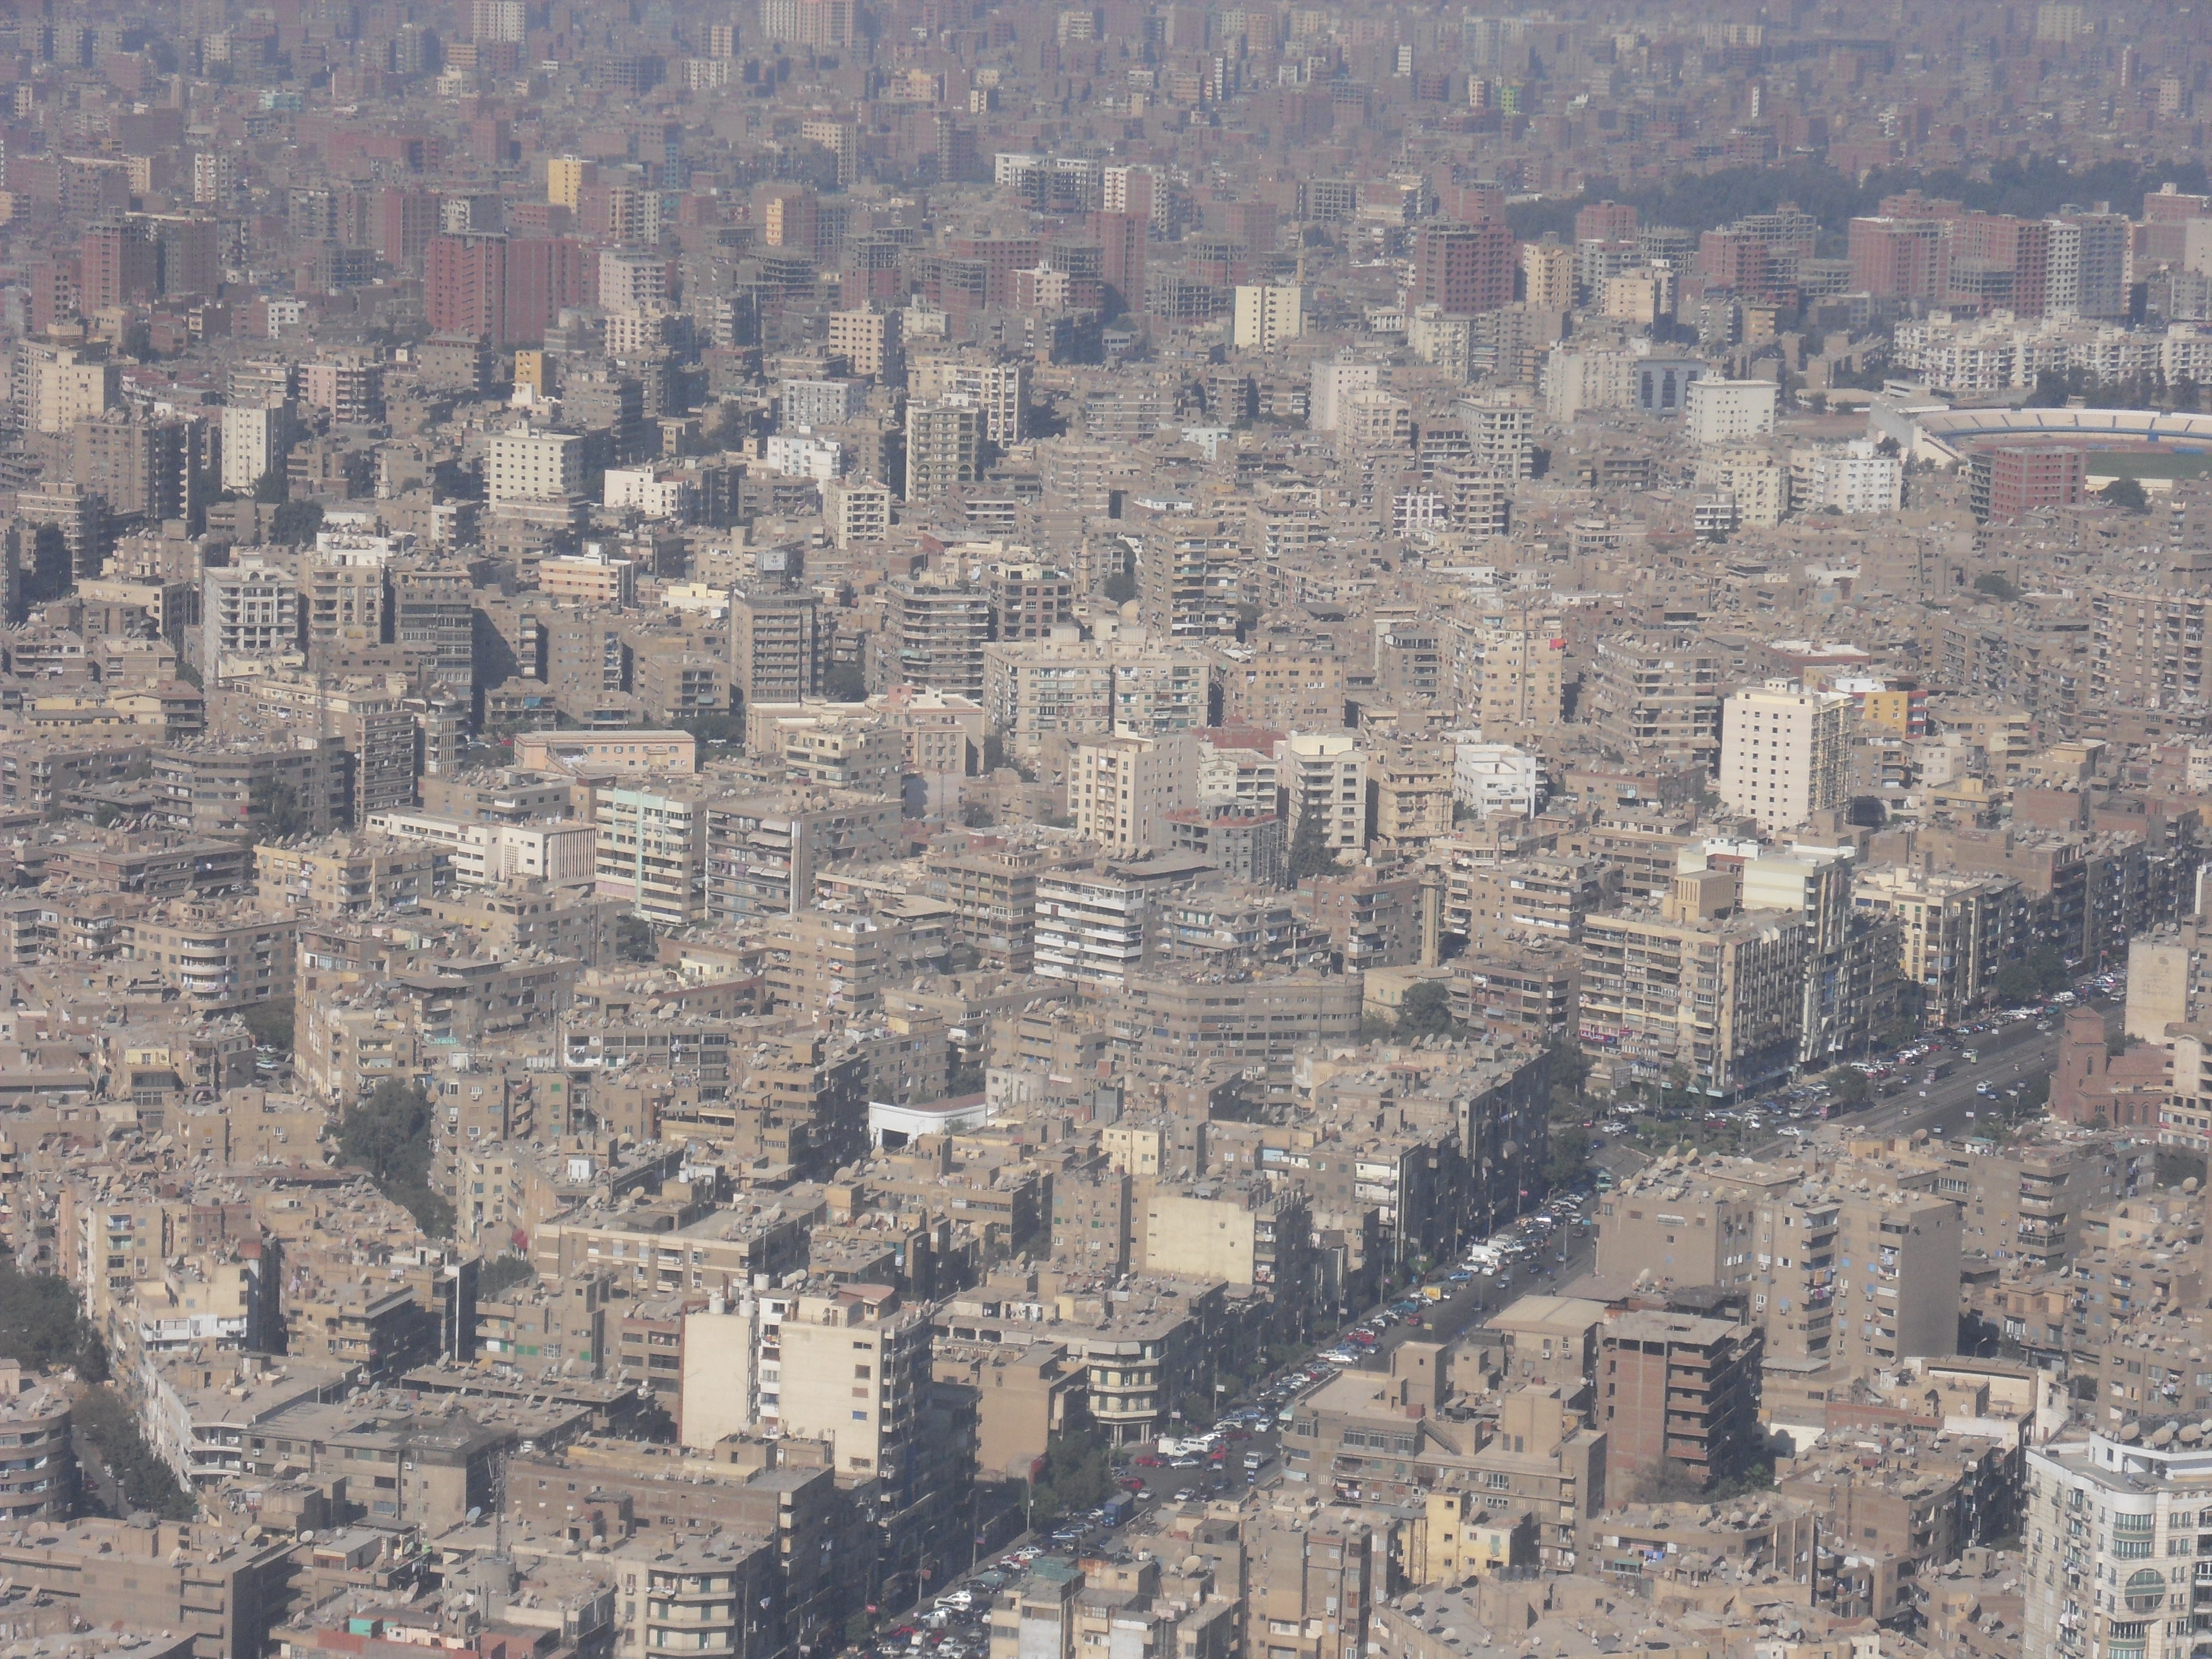 Concrete jungle (Cairo)?